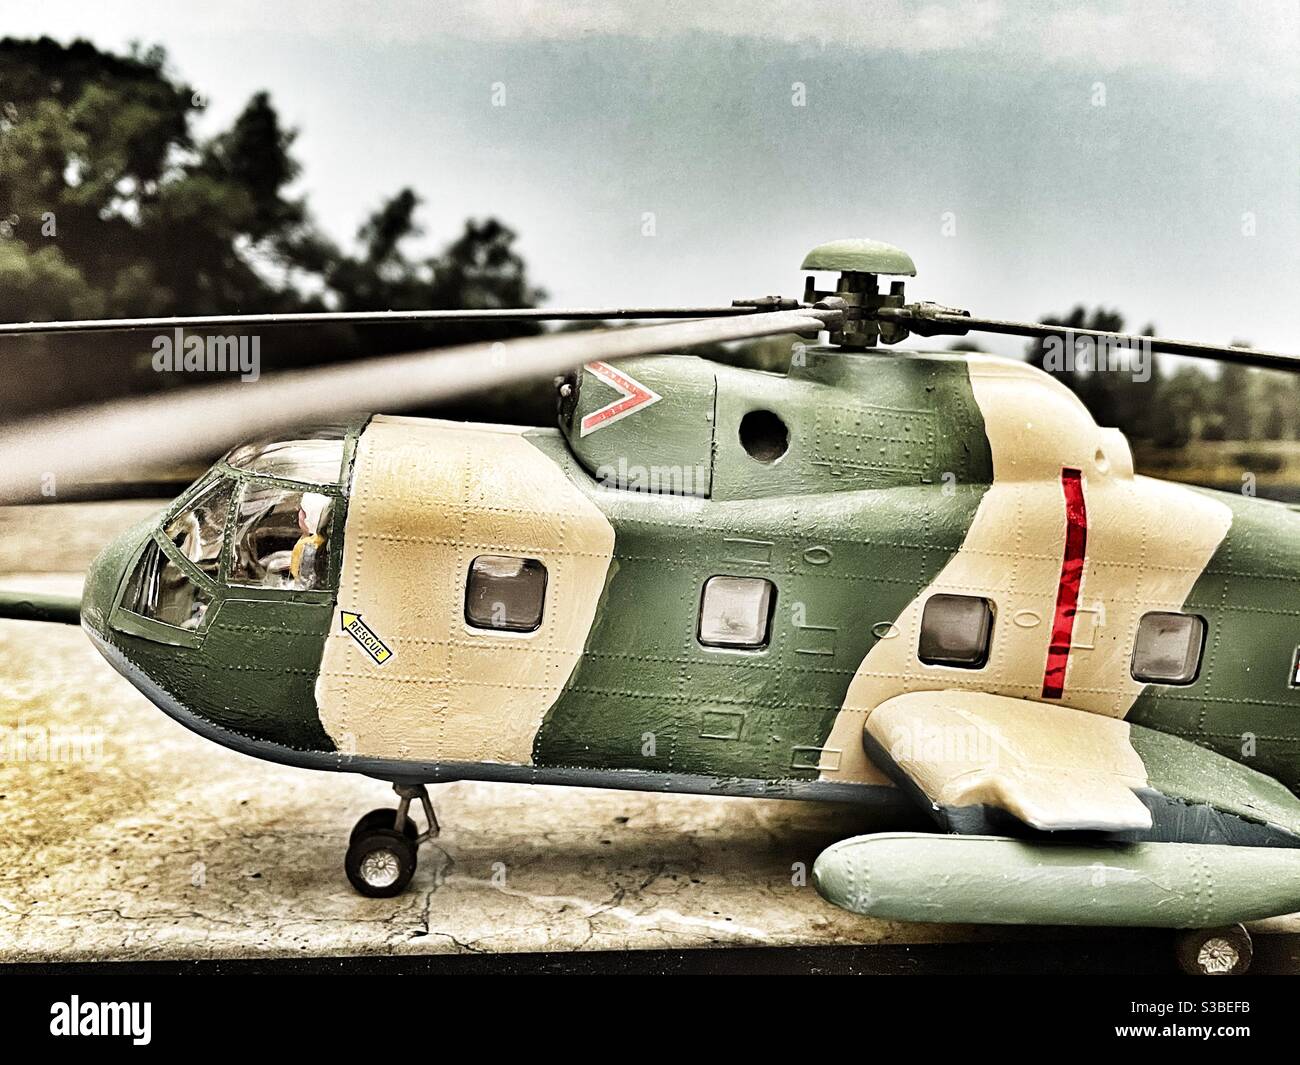 Modelo de helicóptero a escala fotografías e imágenes de alta resolución -  Alamy